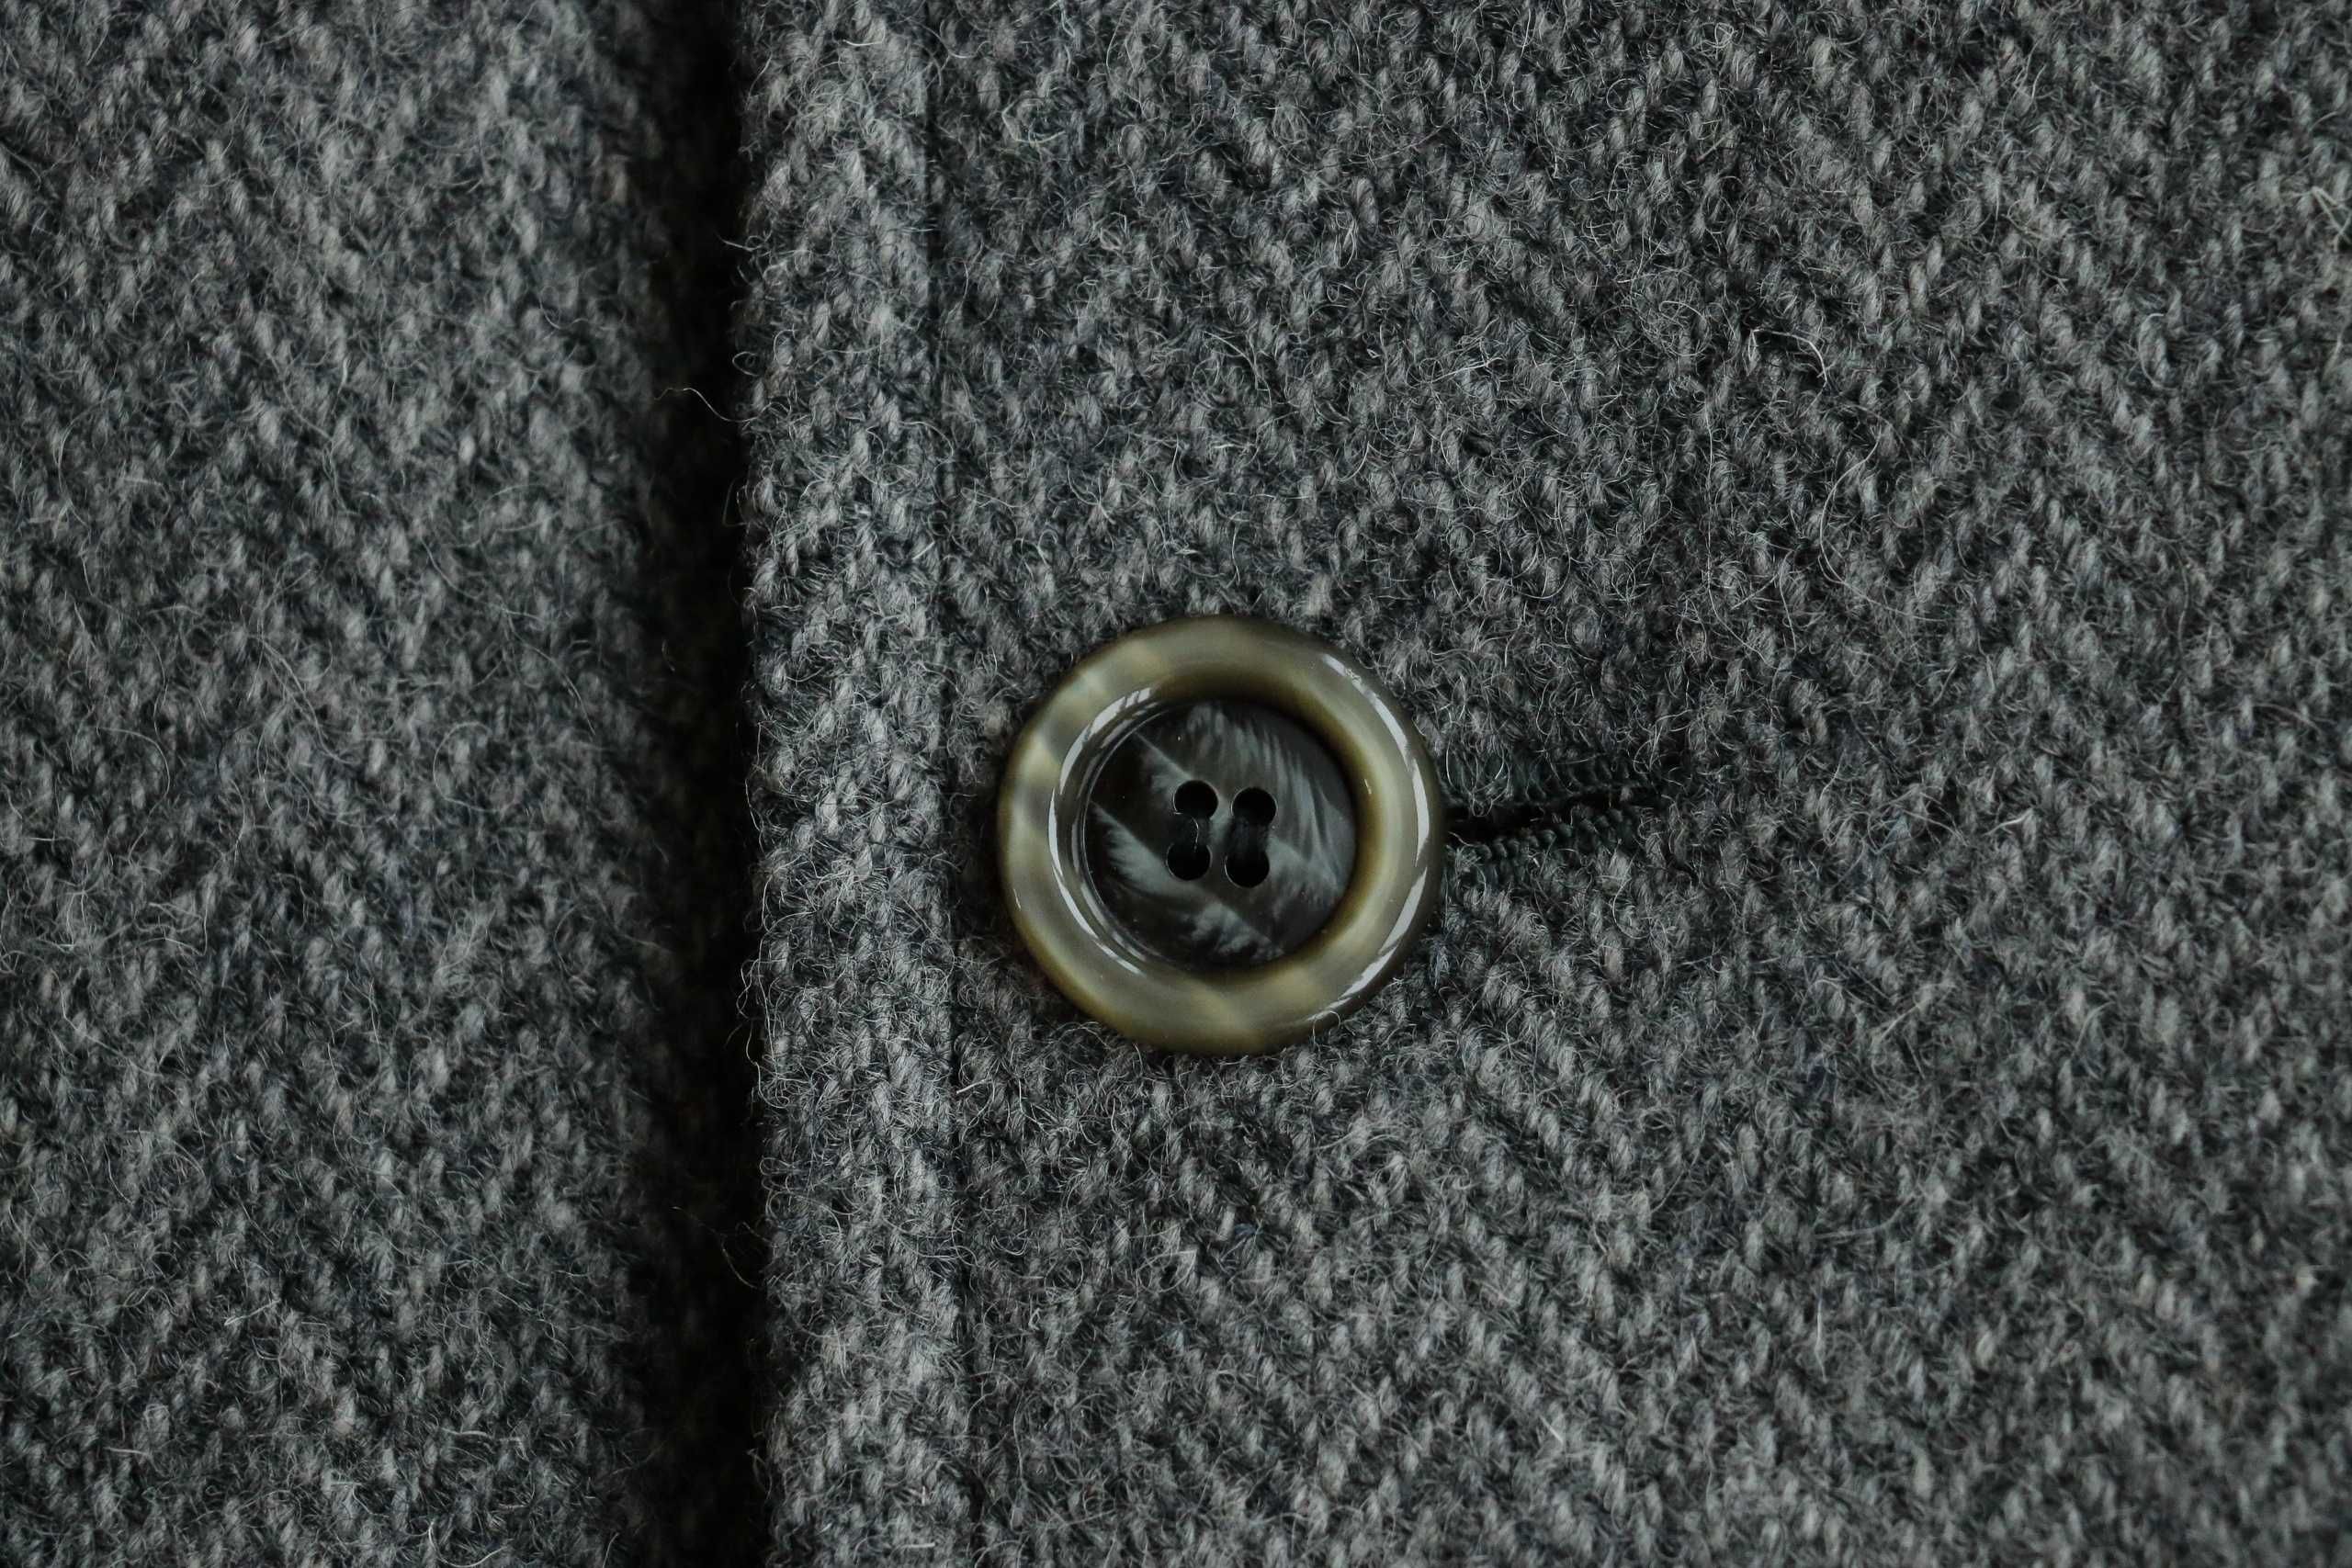 HARRIS TWEED Vintage Wool Coat Blazer Jacket, L-XL